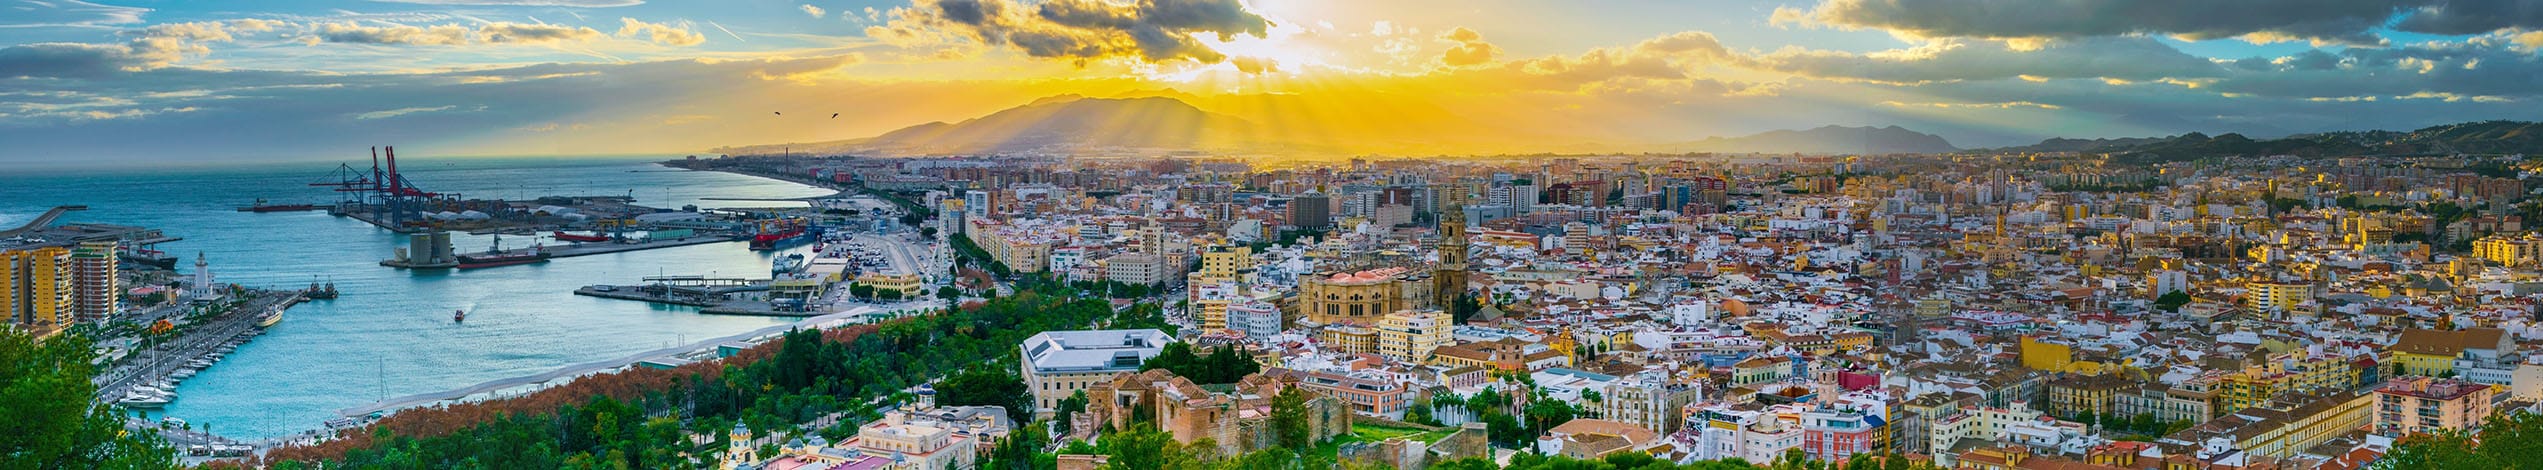 Företags och föreningsresor, Malaga, Spanien